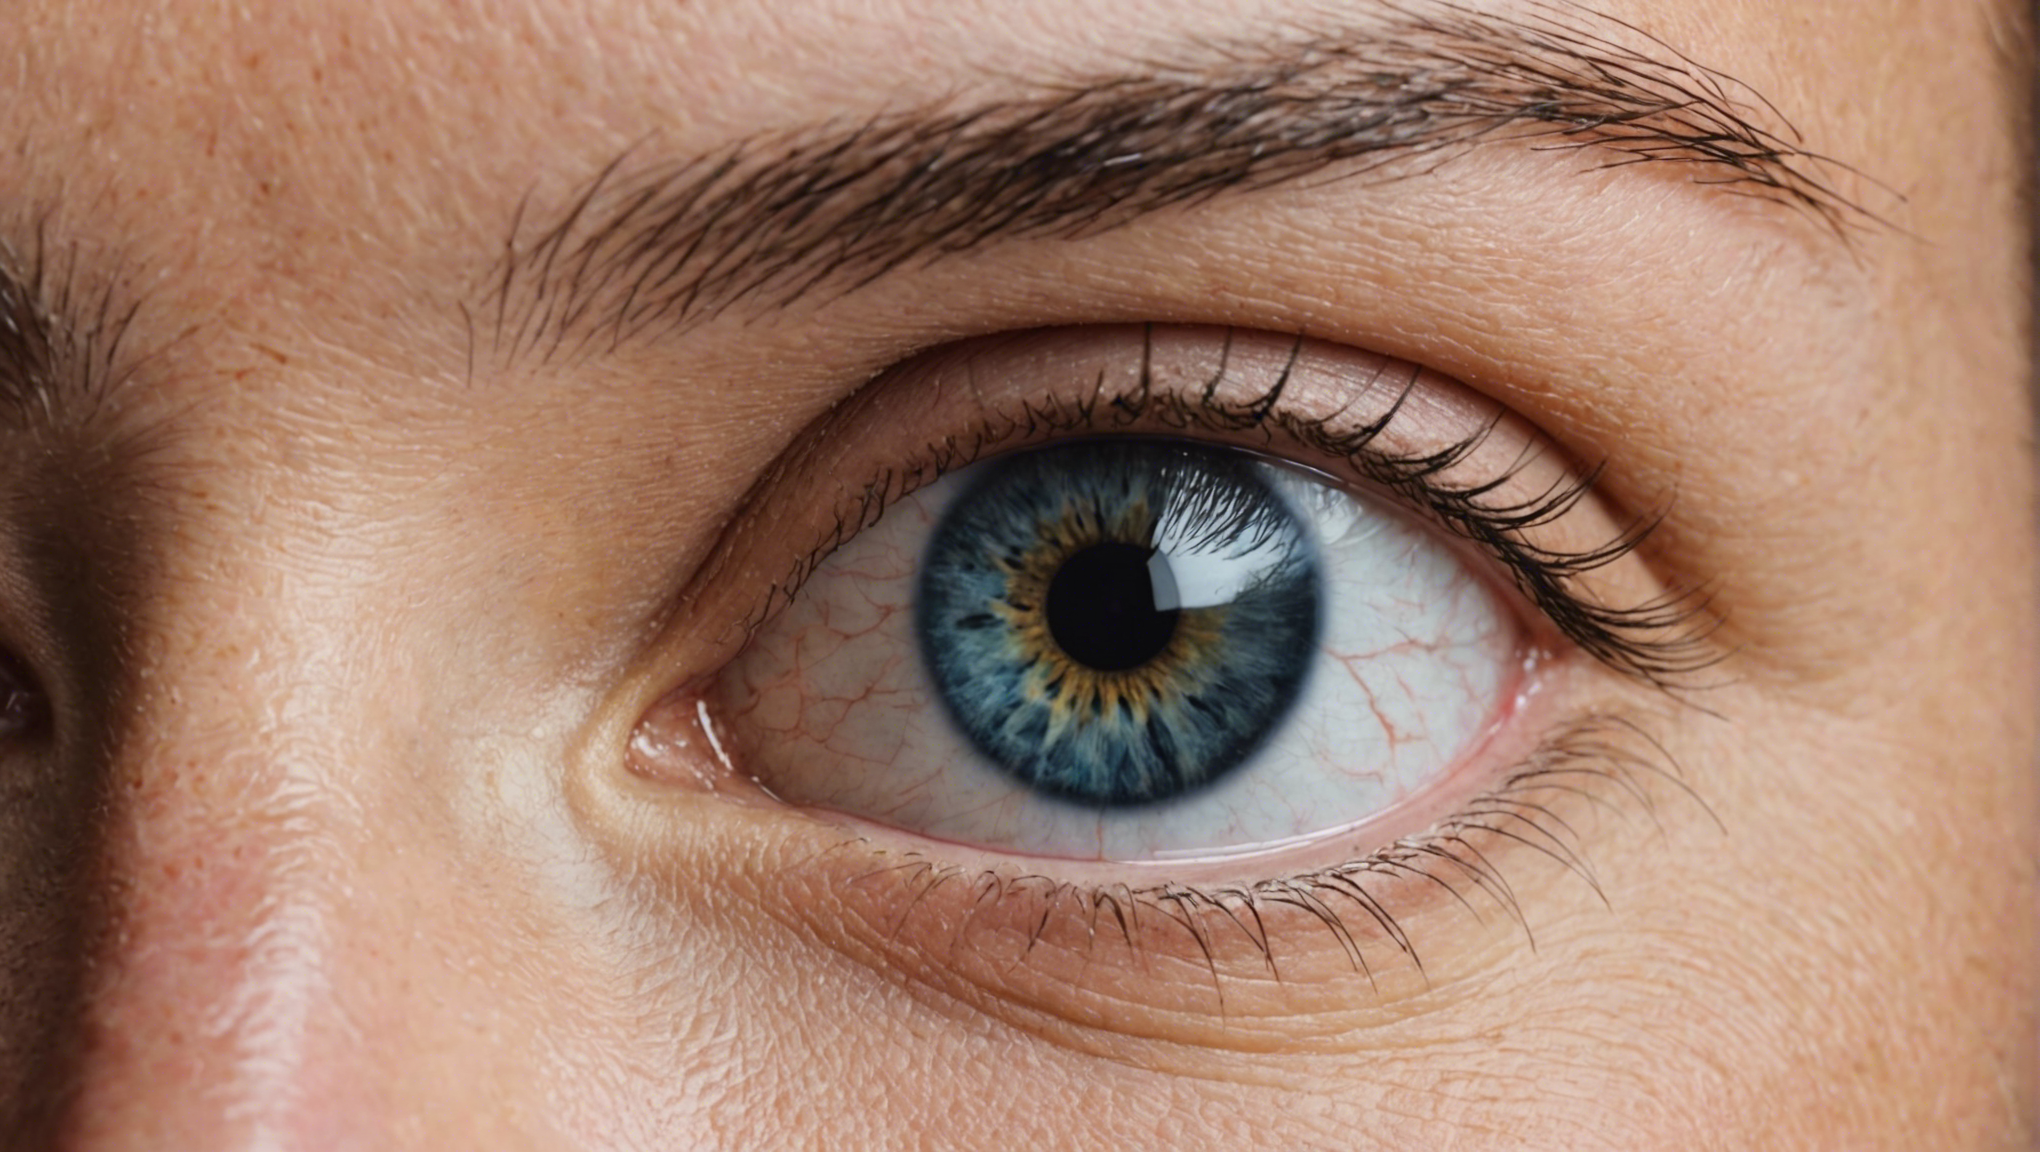 découvrez nos conseils pour une récupération optimale après une opération des yeux. apprenez comment prendre soin de vos yeux et faciliter votre convalescence.